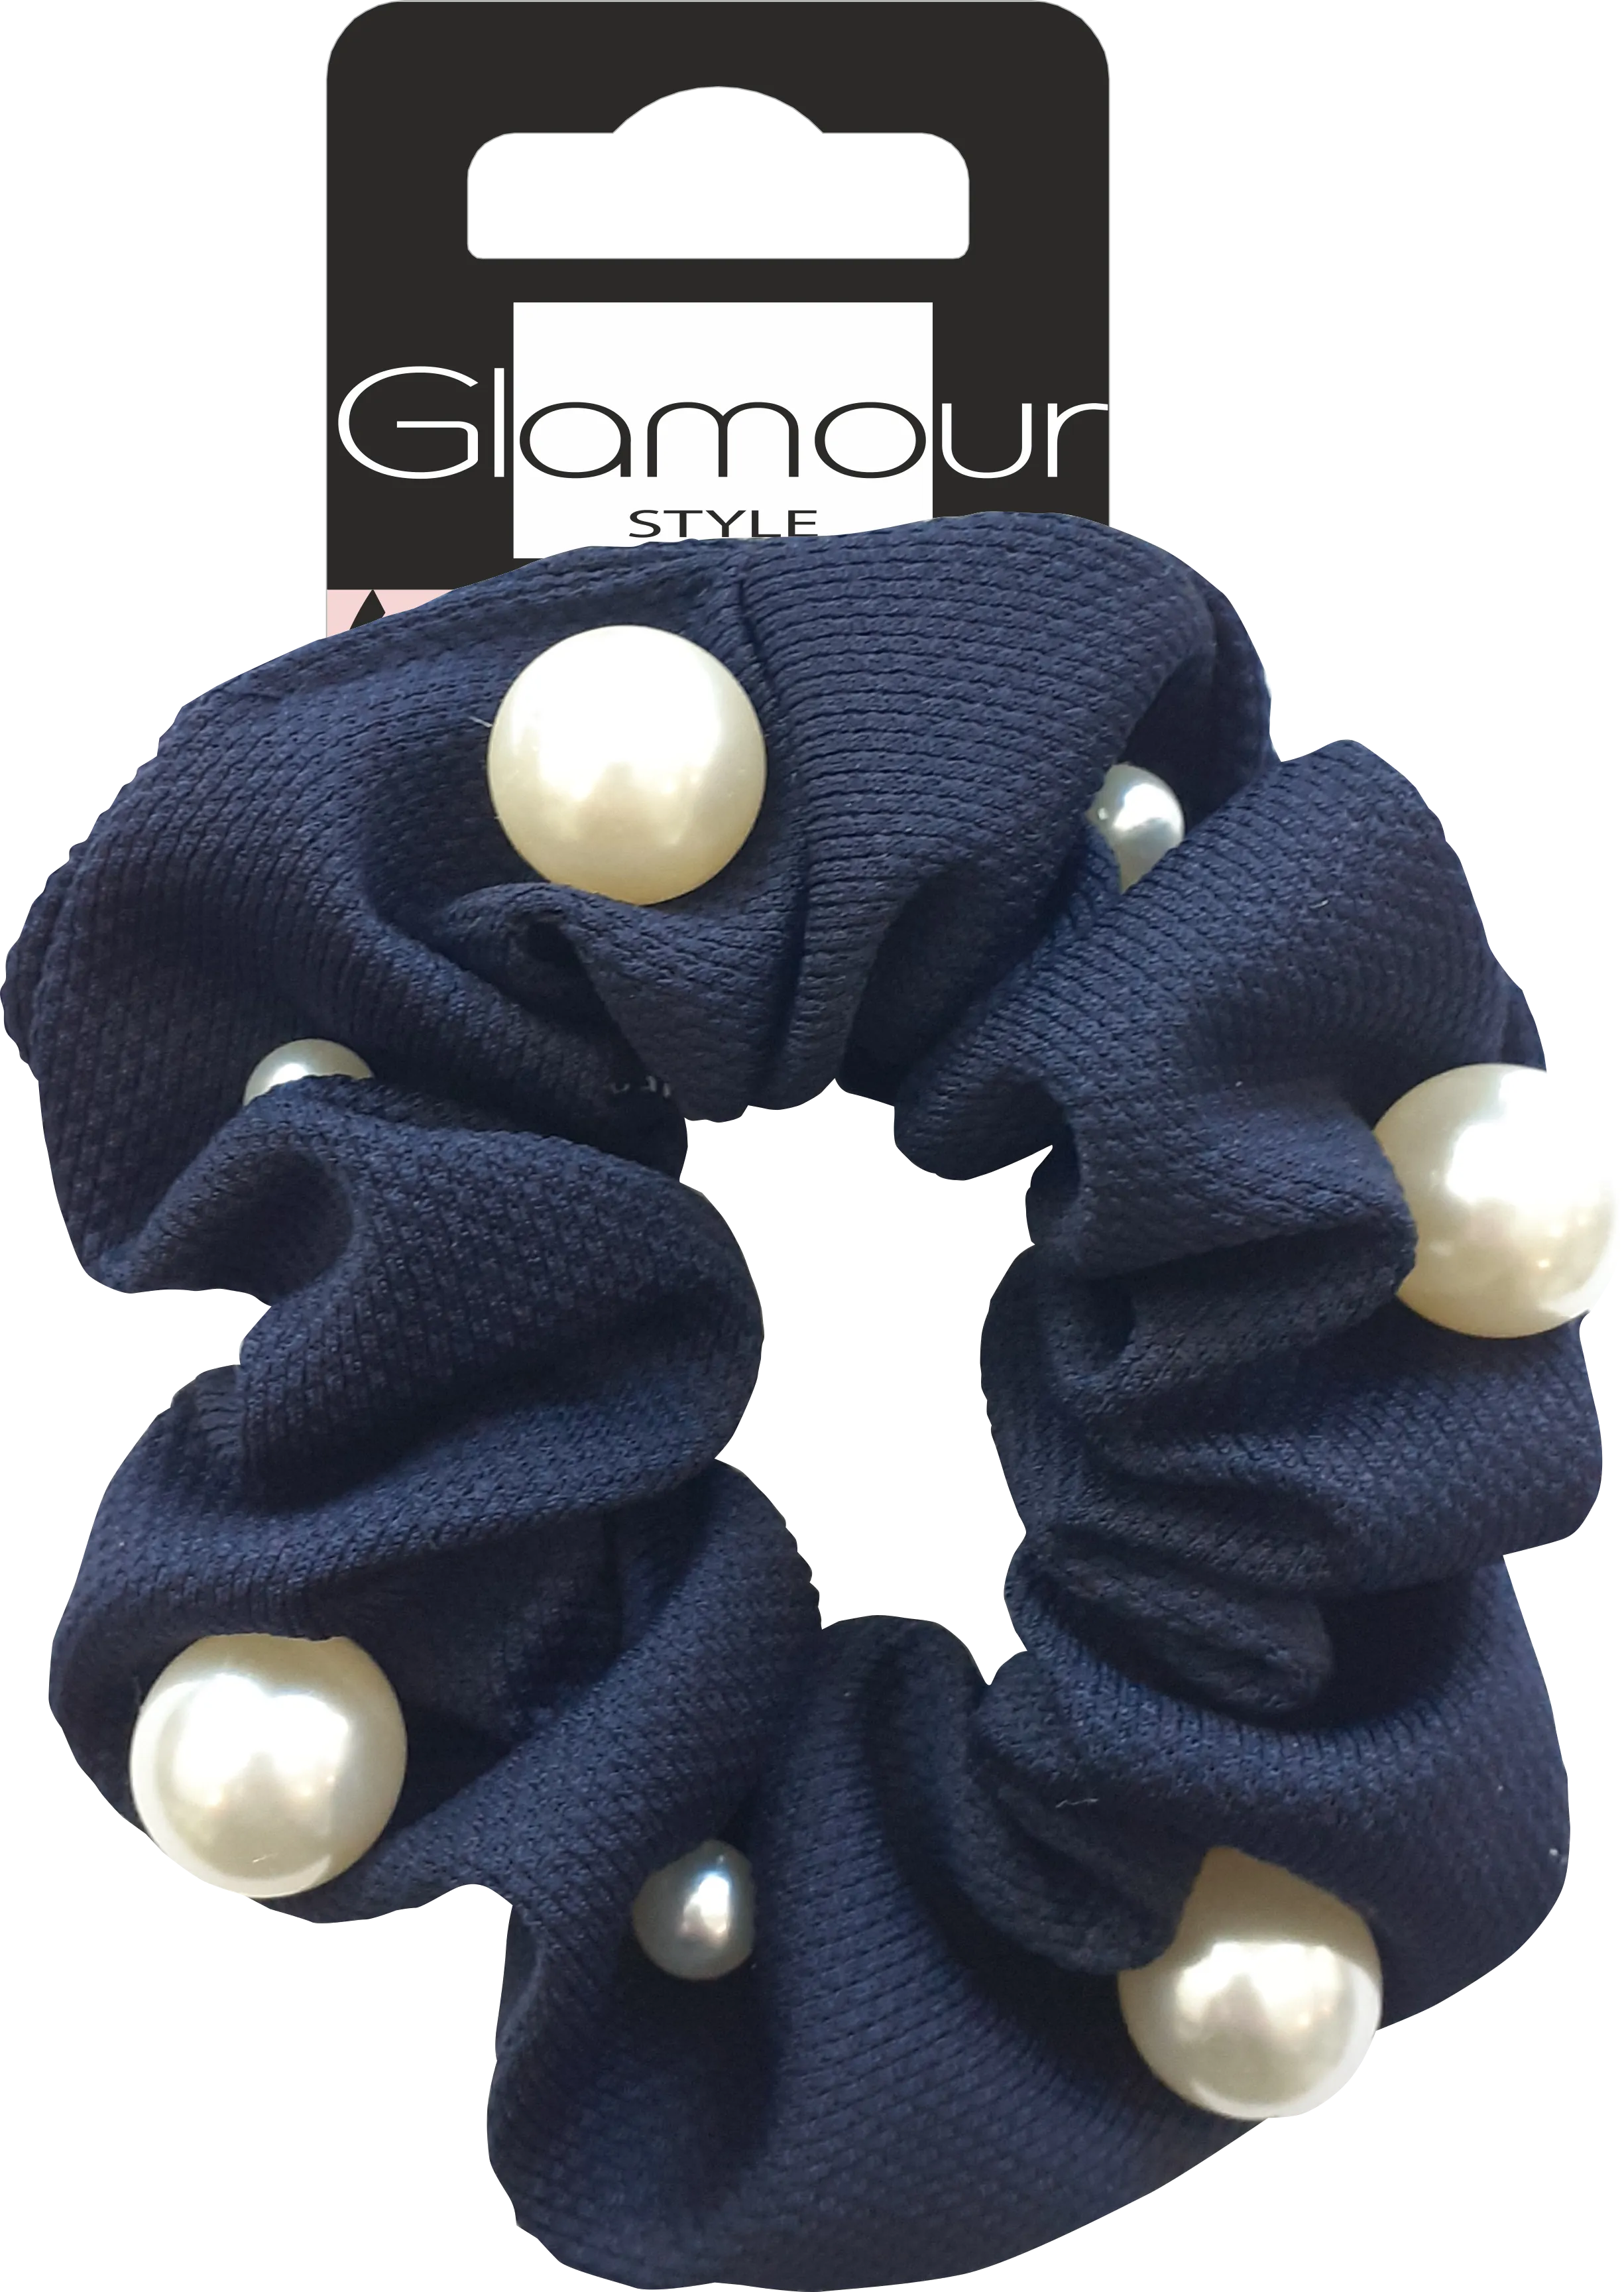 Glamour zawijka-scrunchie do włosów perełkami o różnej wielkości, granatowa, 1 szt.